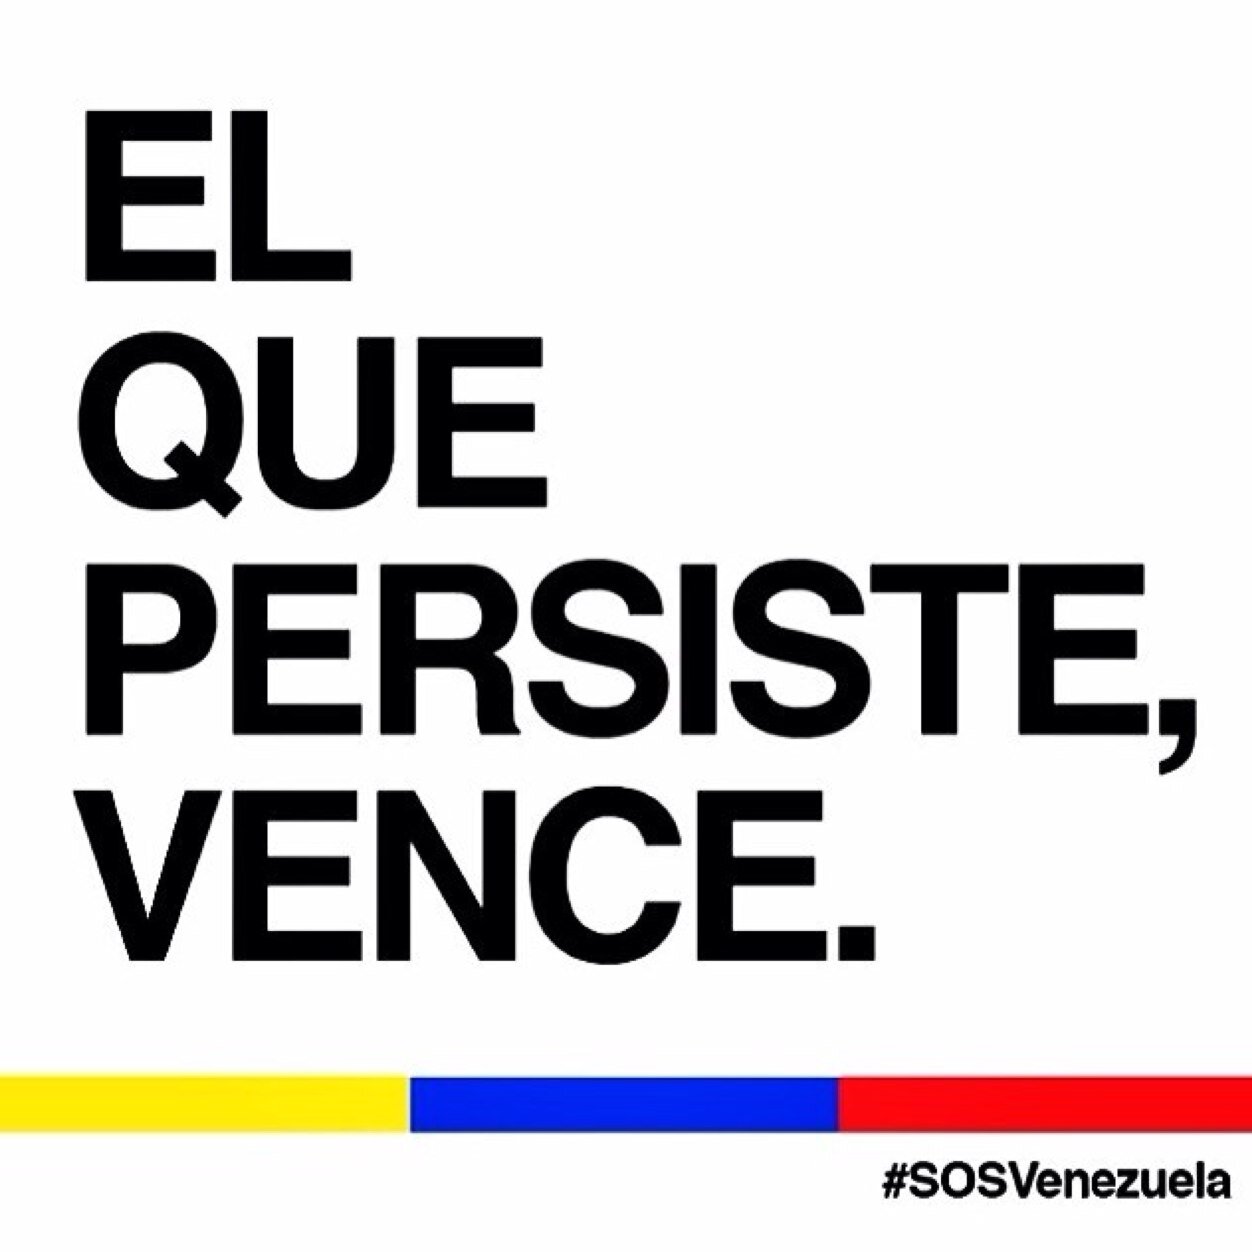 Los venezolanos queremos paz y progreso.